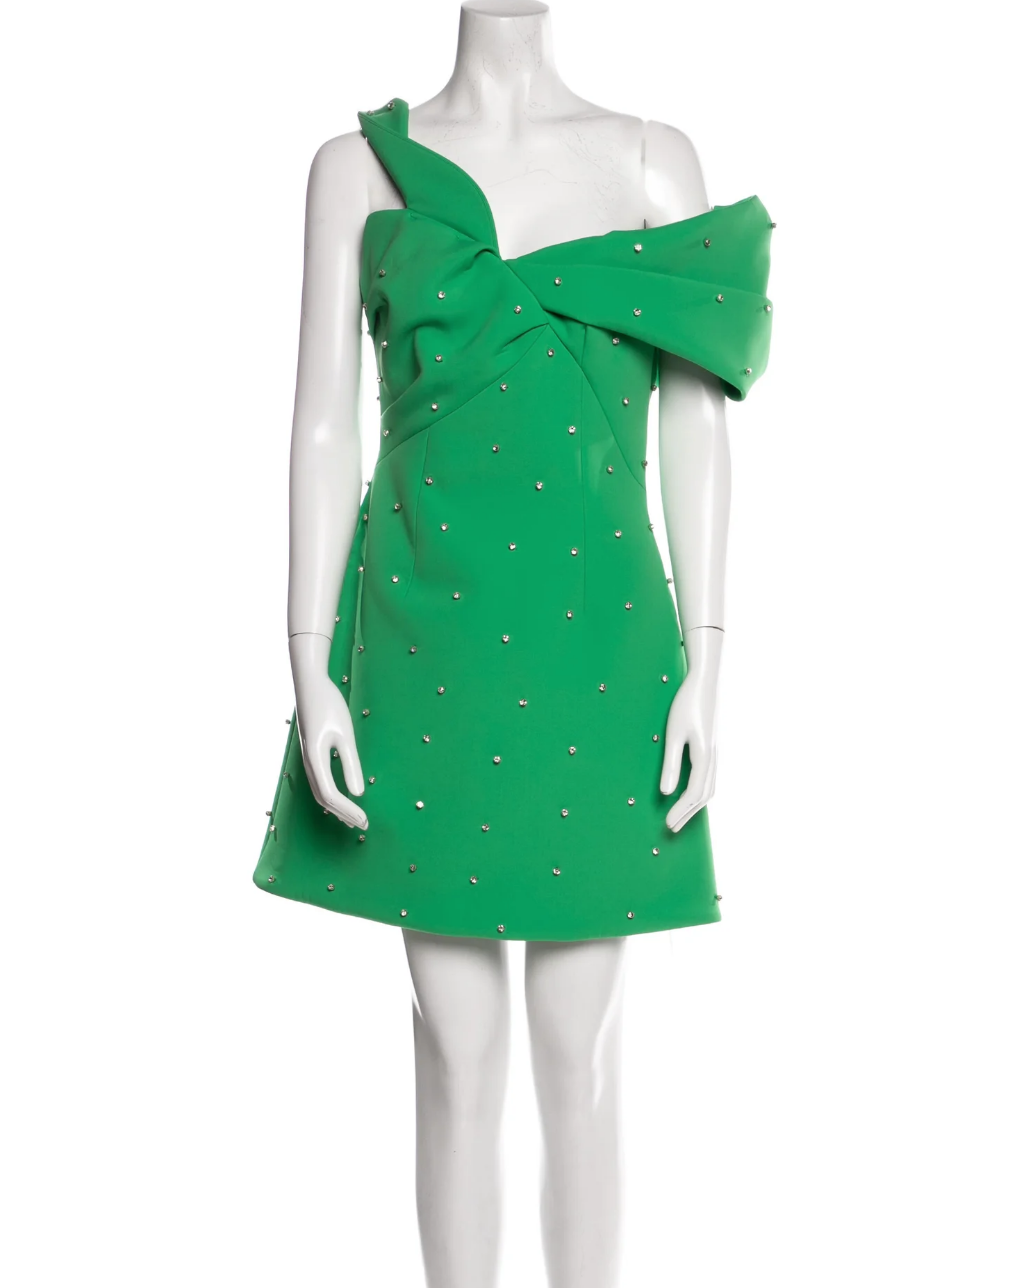 Crystal Kung Minkoff's Green Embellished Off The Shoulder Dress